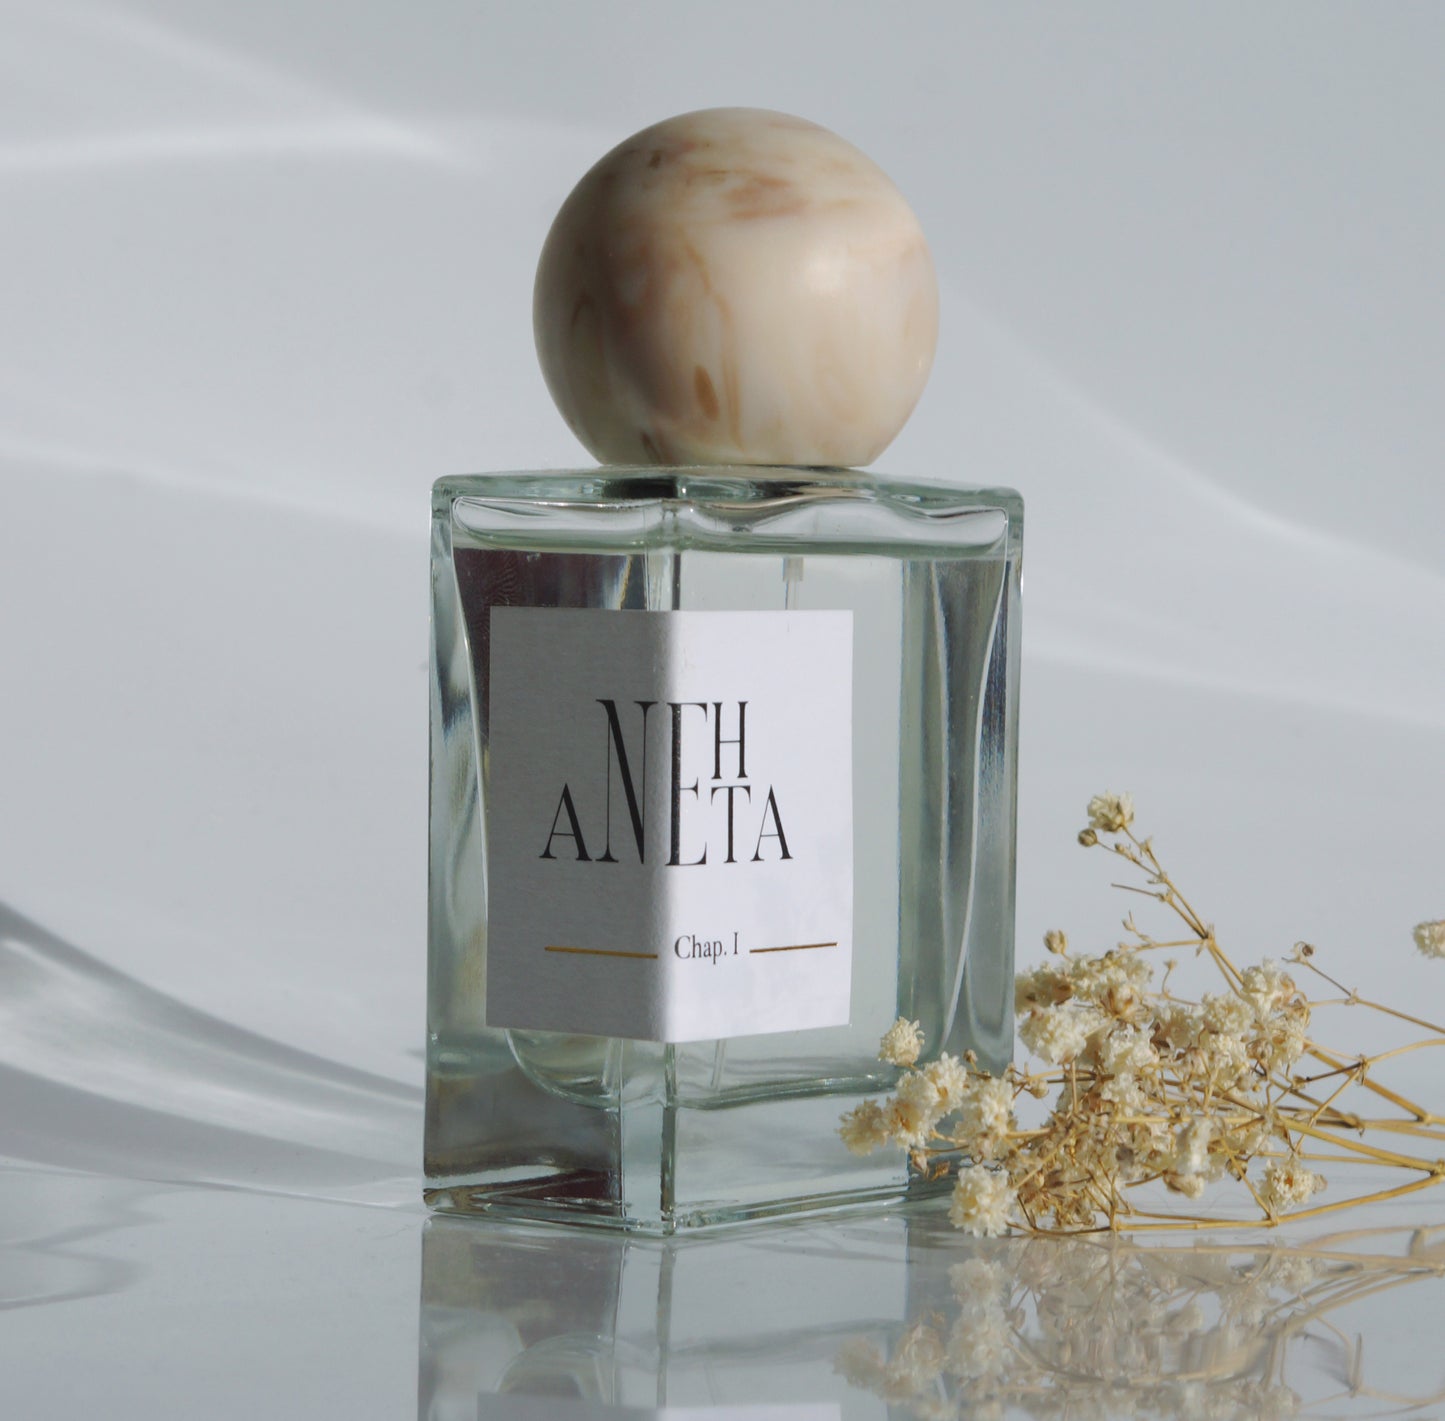 Le parfum Anehta vue de biais avec quelques fleurs séchées.